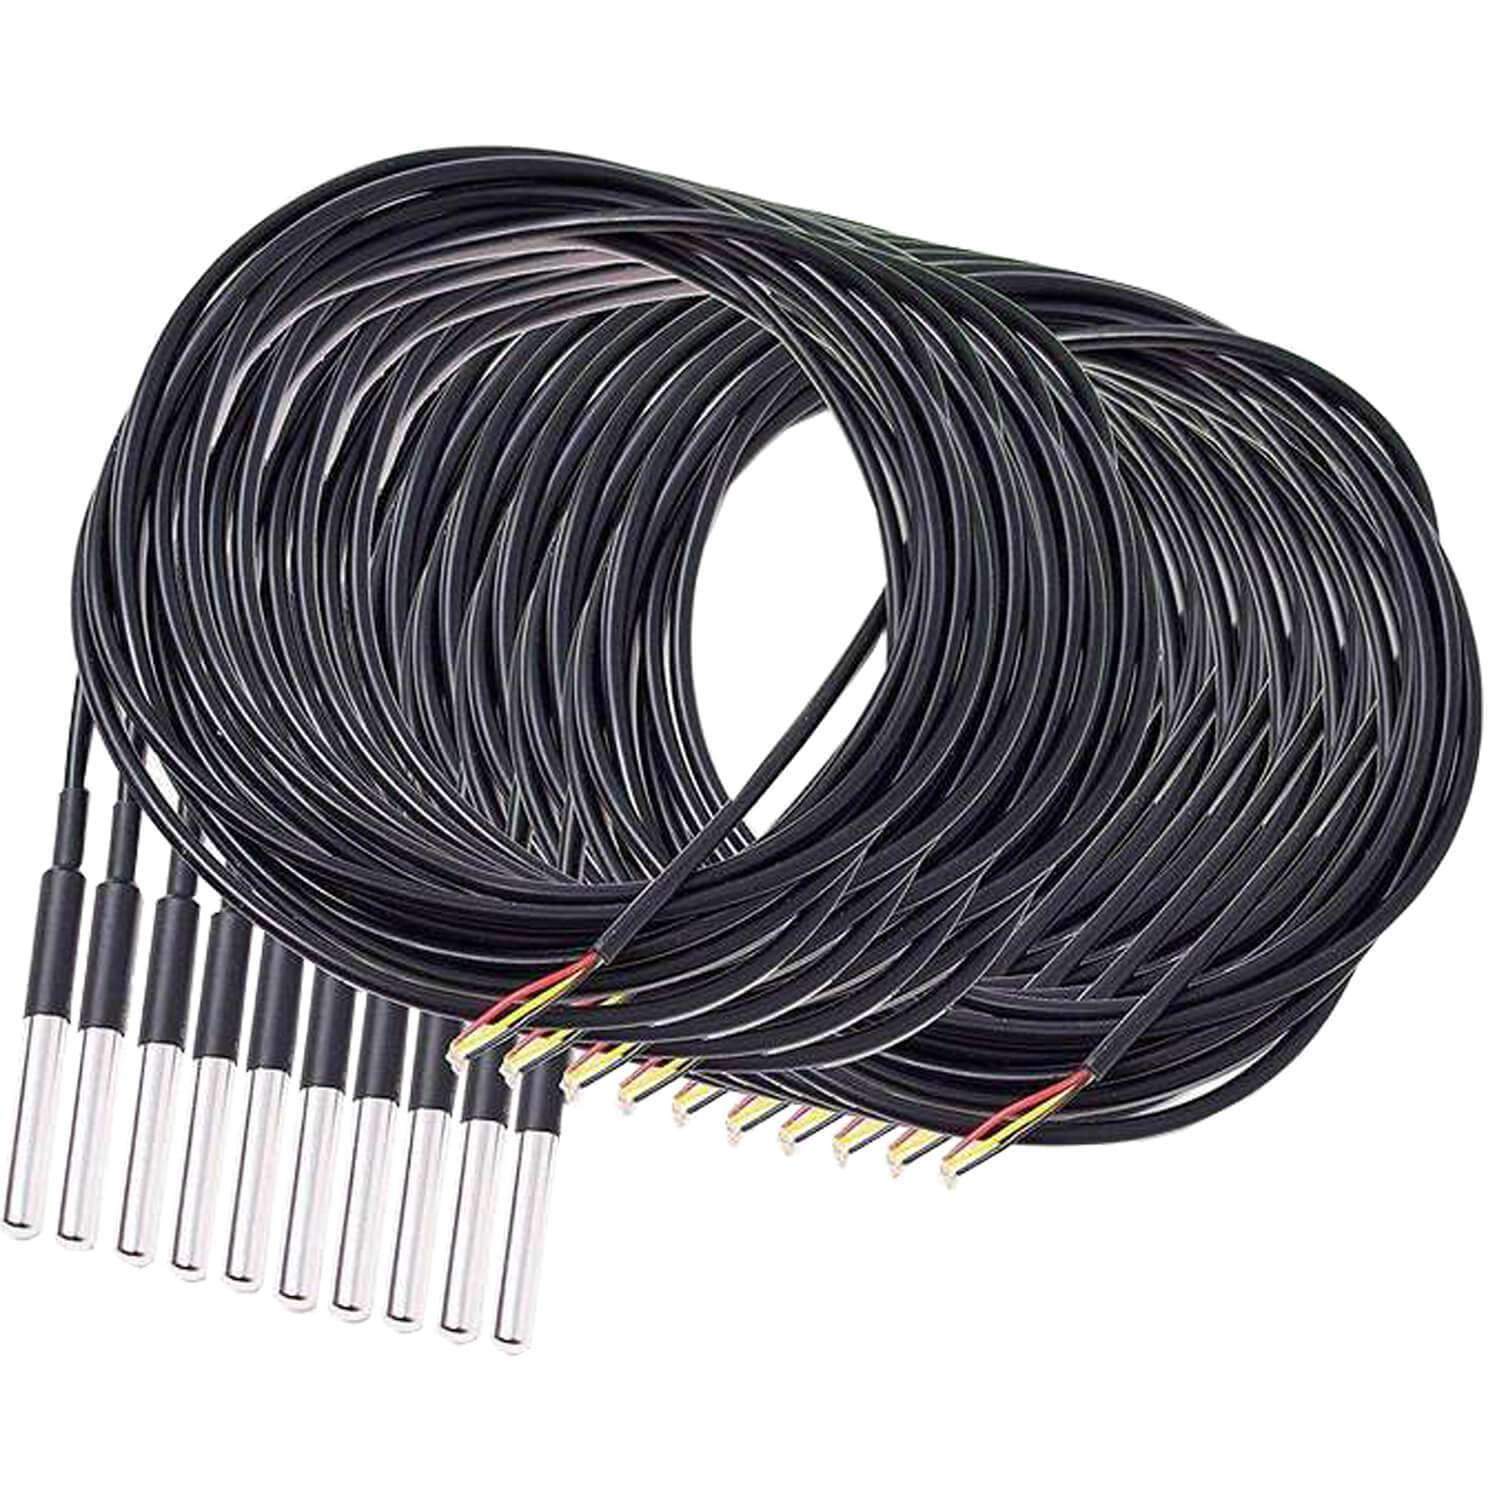 3M Kabel DS18B20 digitaler Edelstahl Temperatursensor Temperaturfühler